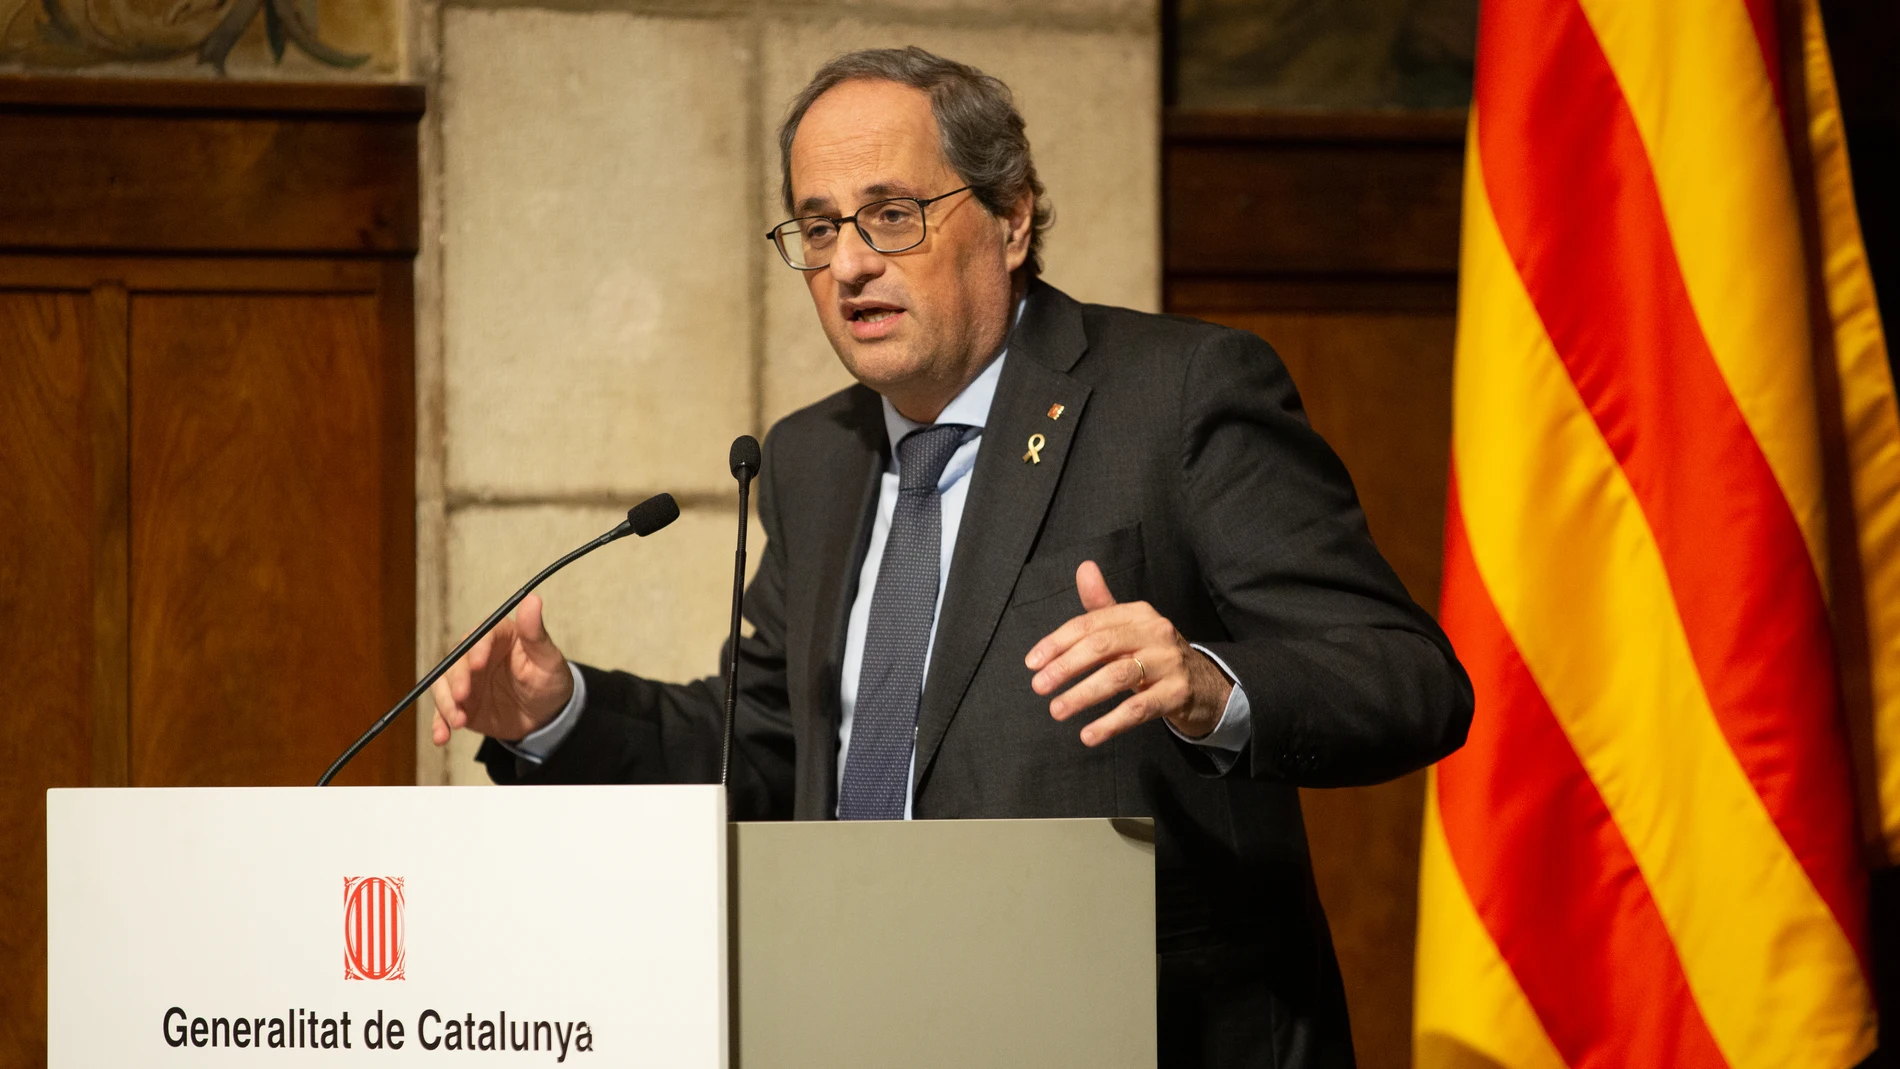 El president de la Generalitat, Quim Torra, durante su discurso en la presentación de la Estrategia de Inteligencia Artificial de Catalunya, en Barcelona/Catalunya (España) a 18 de febrero de 2020.18 FEBRERO 2020 POLÍTICOS CATALANES;INNOVACIÓN;TECNOLOGÍADavid Zorrakino / Europa Press18/02/2020